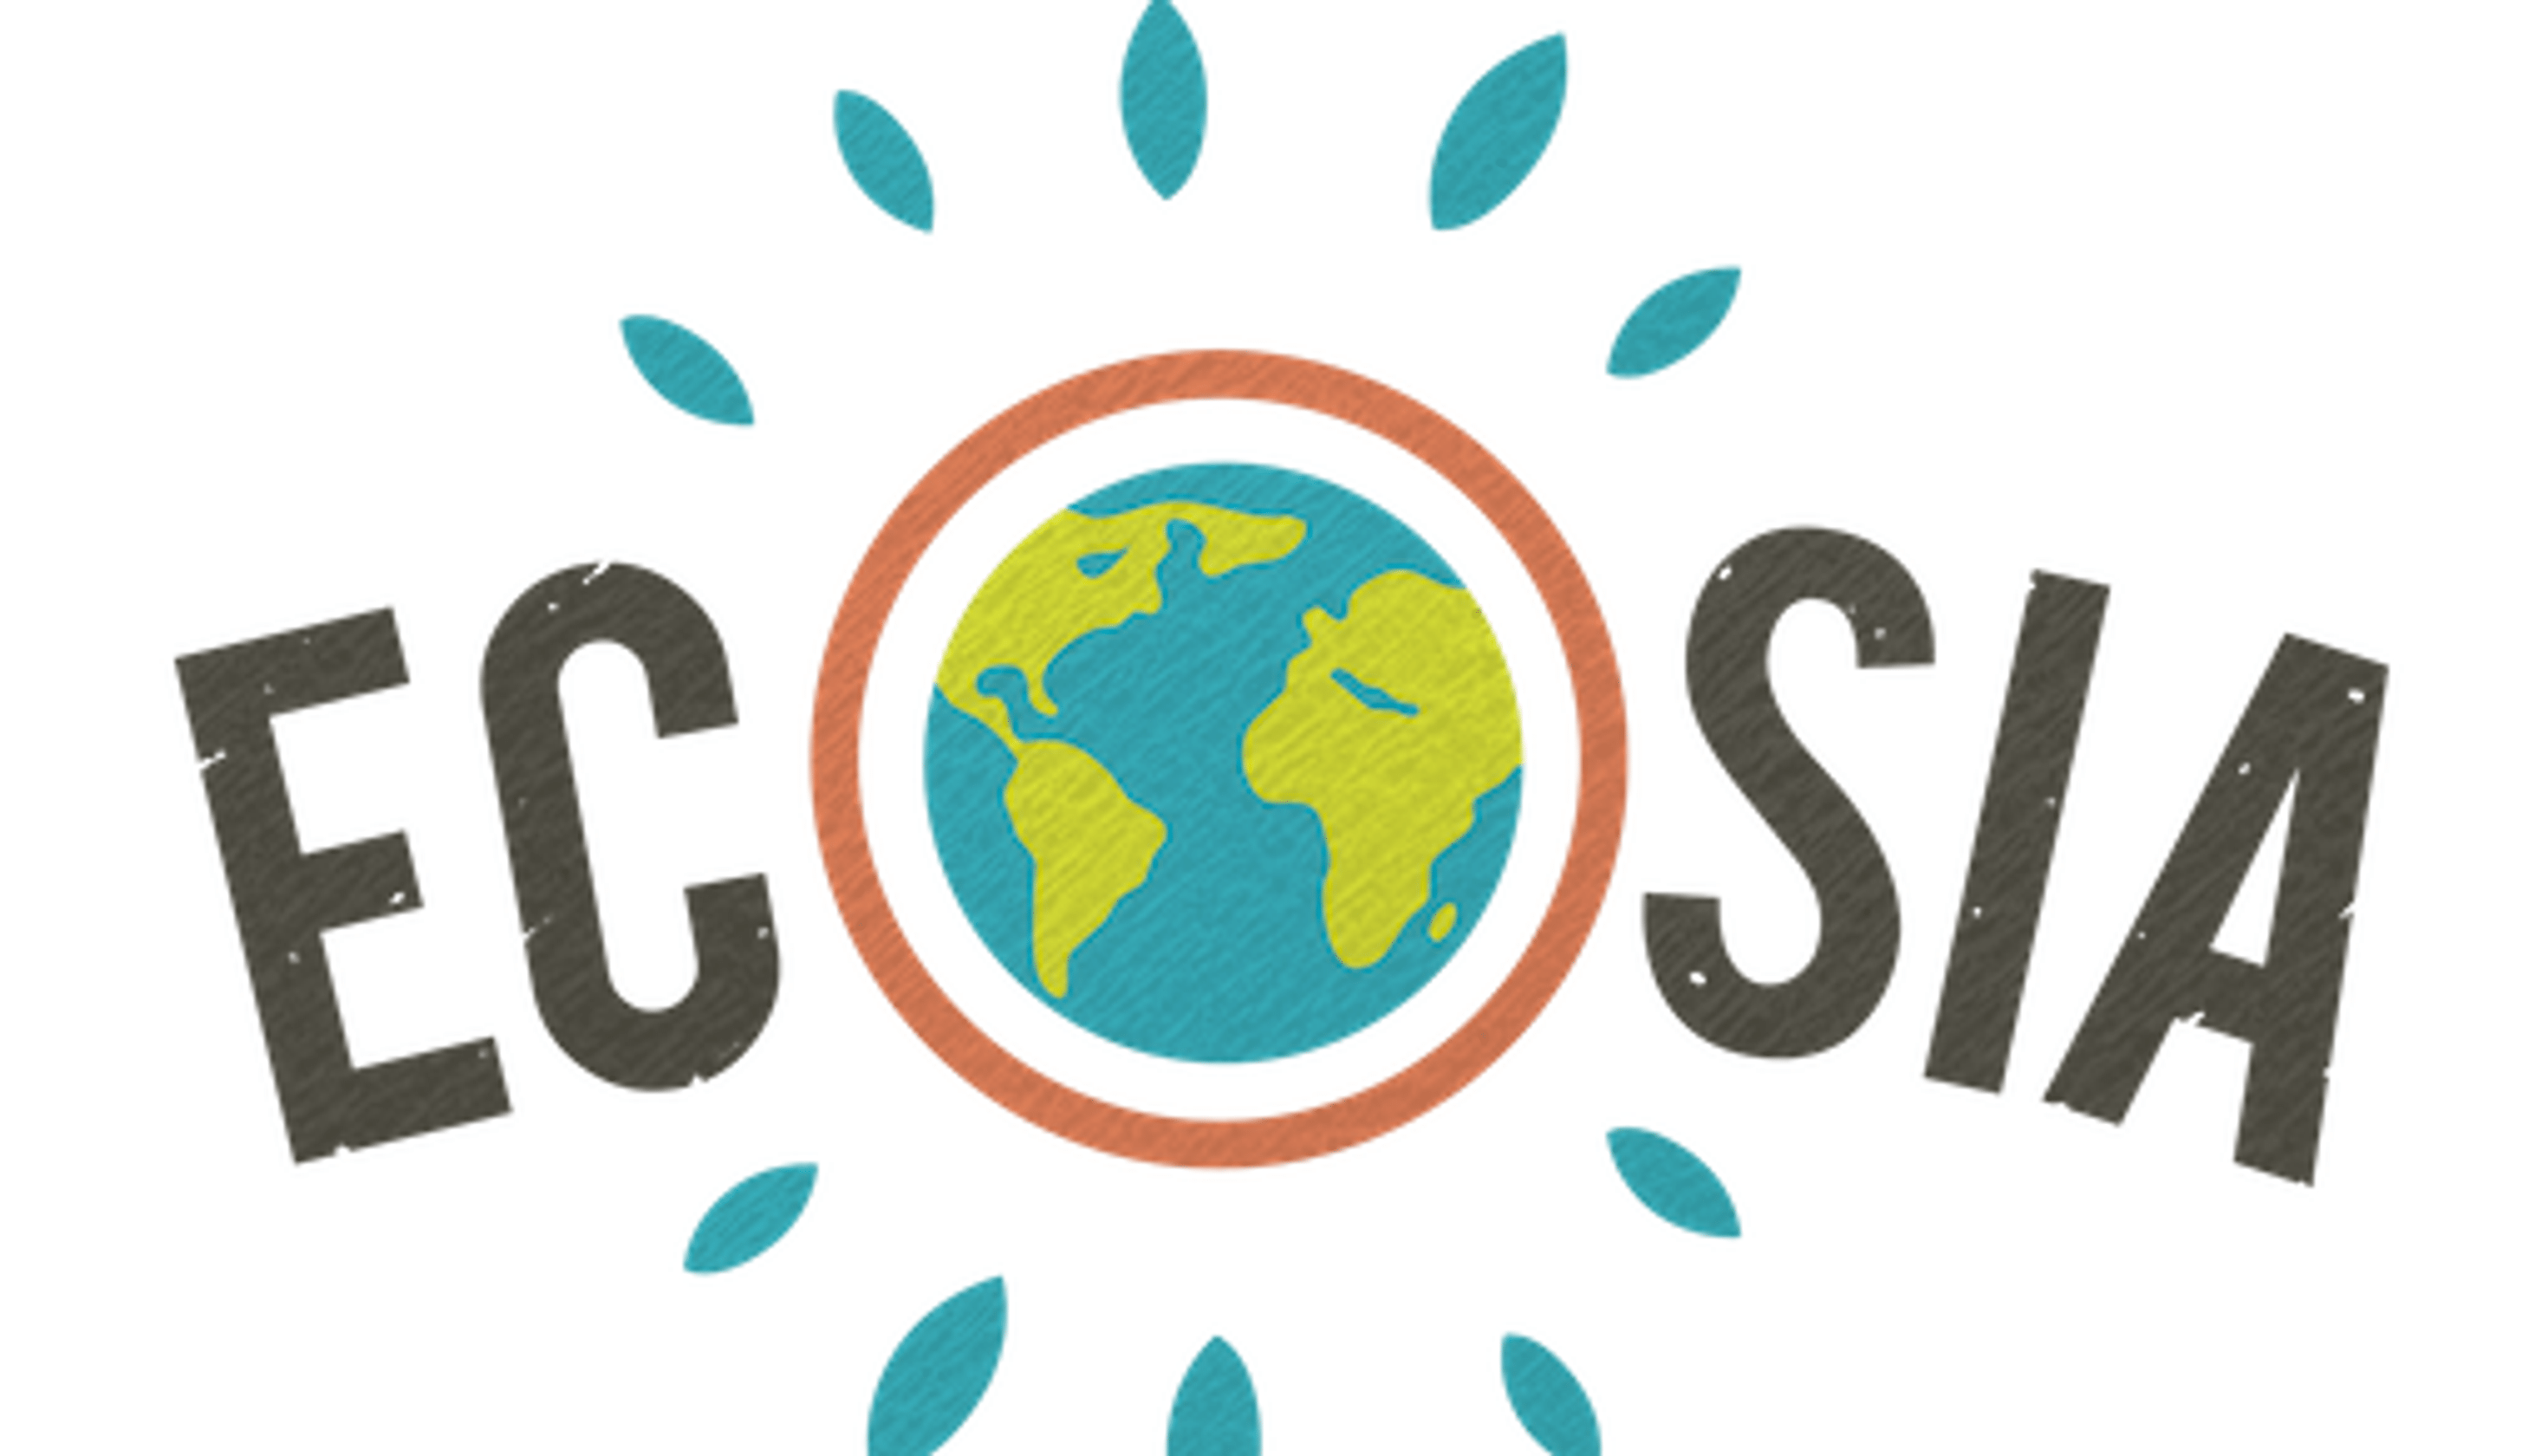 Ecosia.png